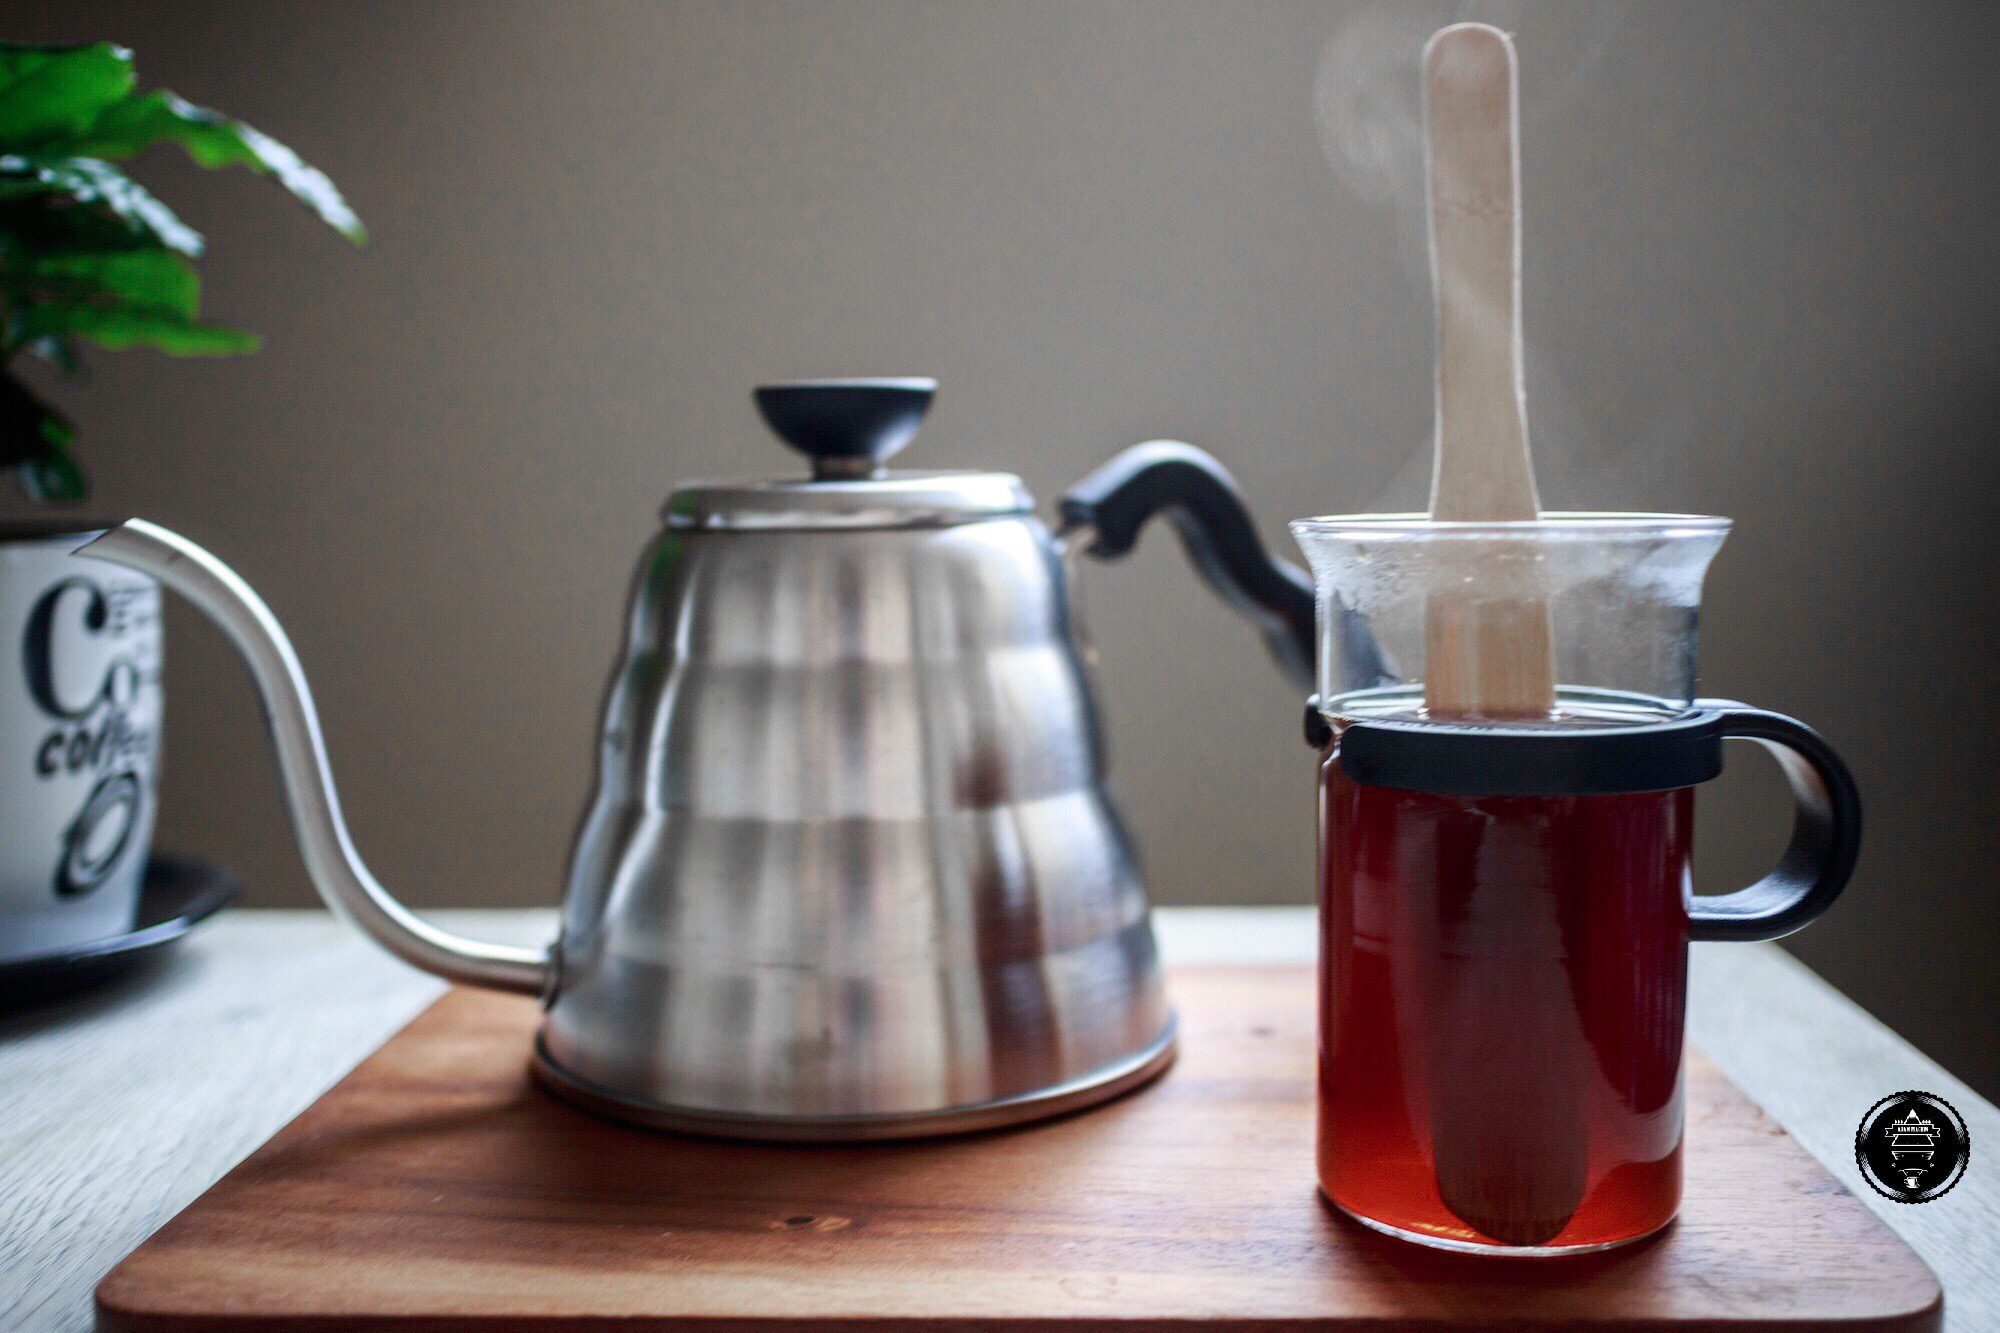 “Stir your Coffee” a V60 recipe